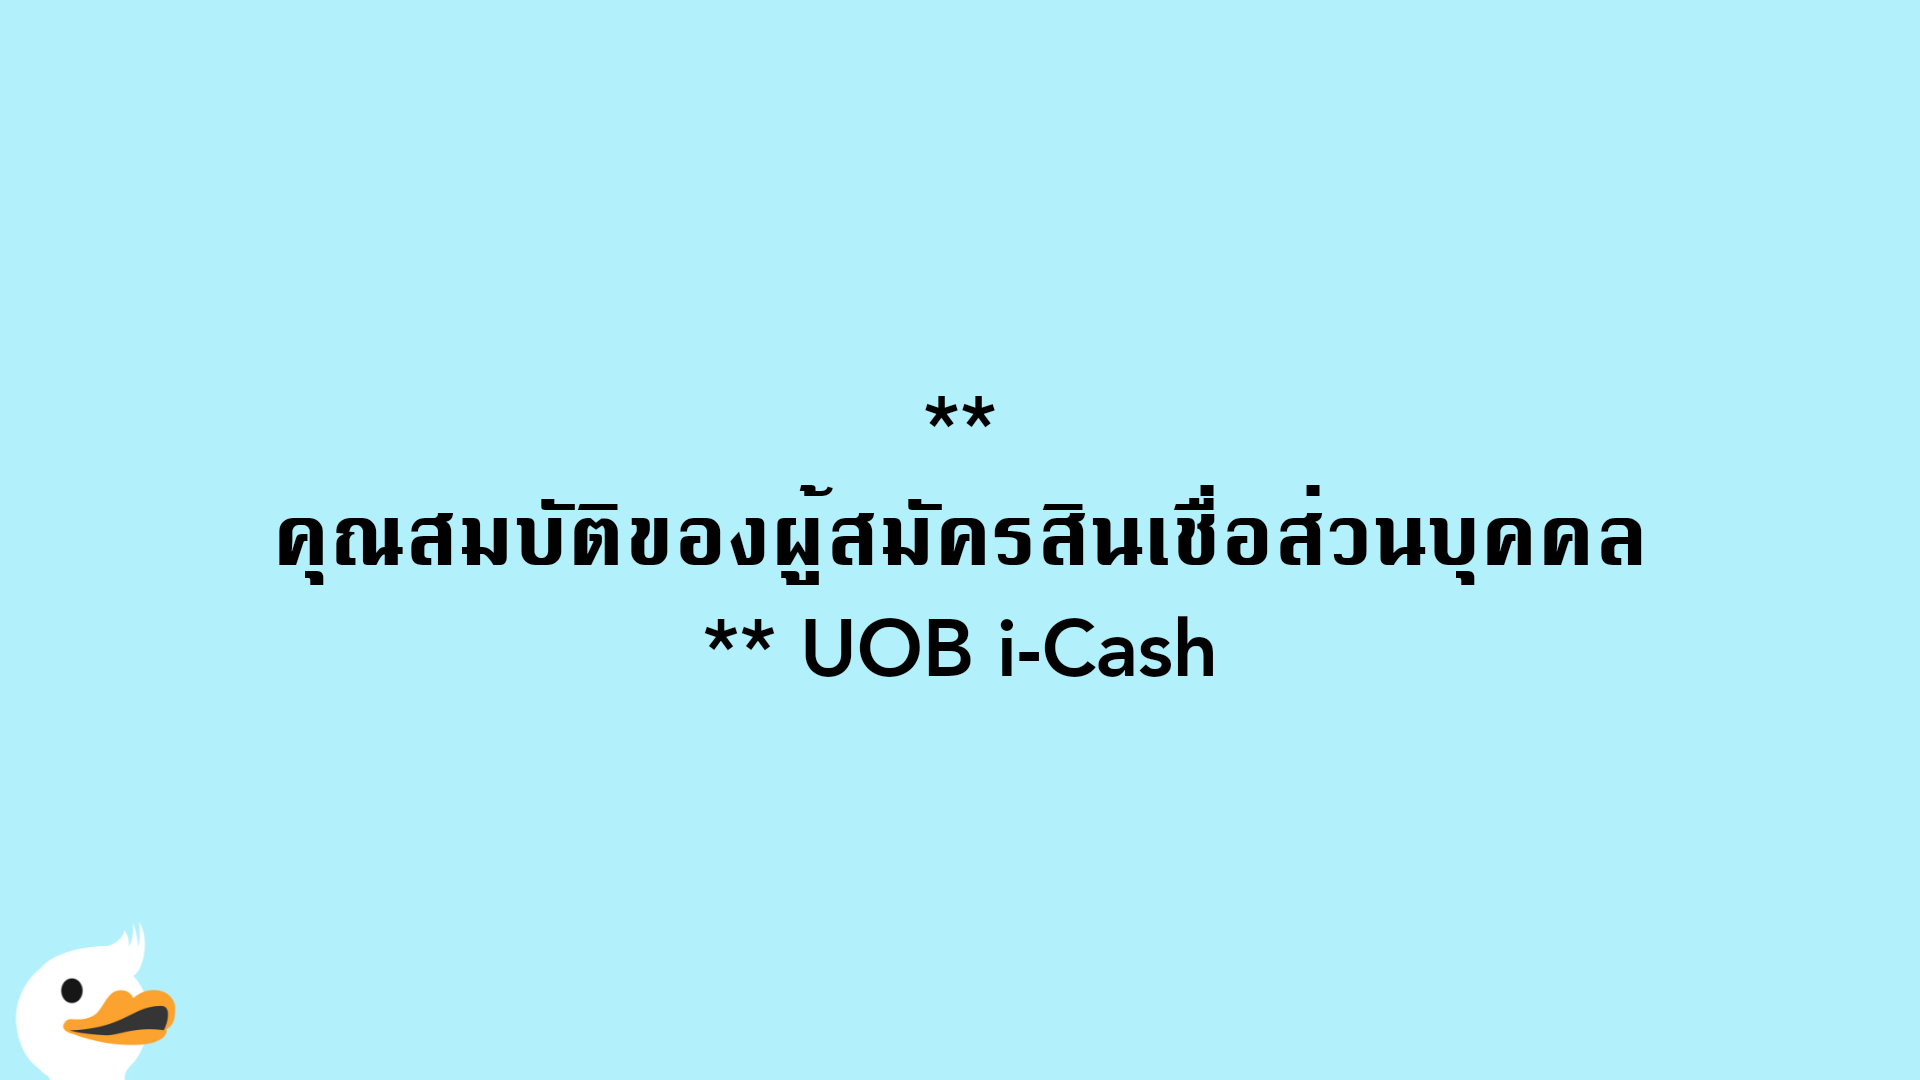 คุณสมบัติของผู้สมัครสินเชื่อส่วนบุคคล UOB i-Cash